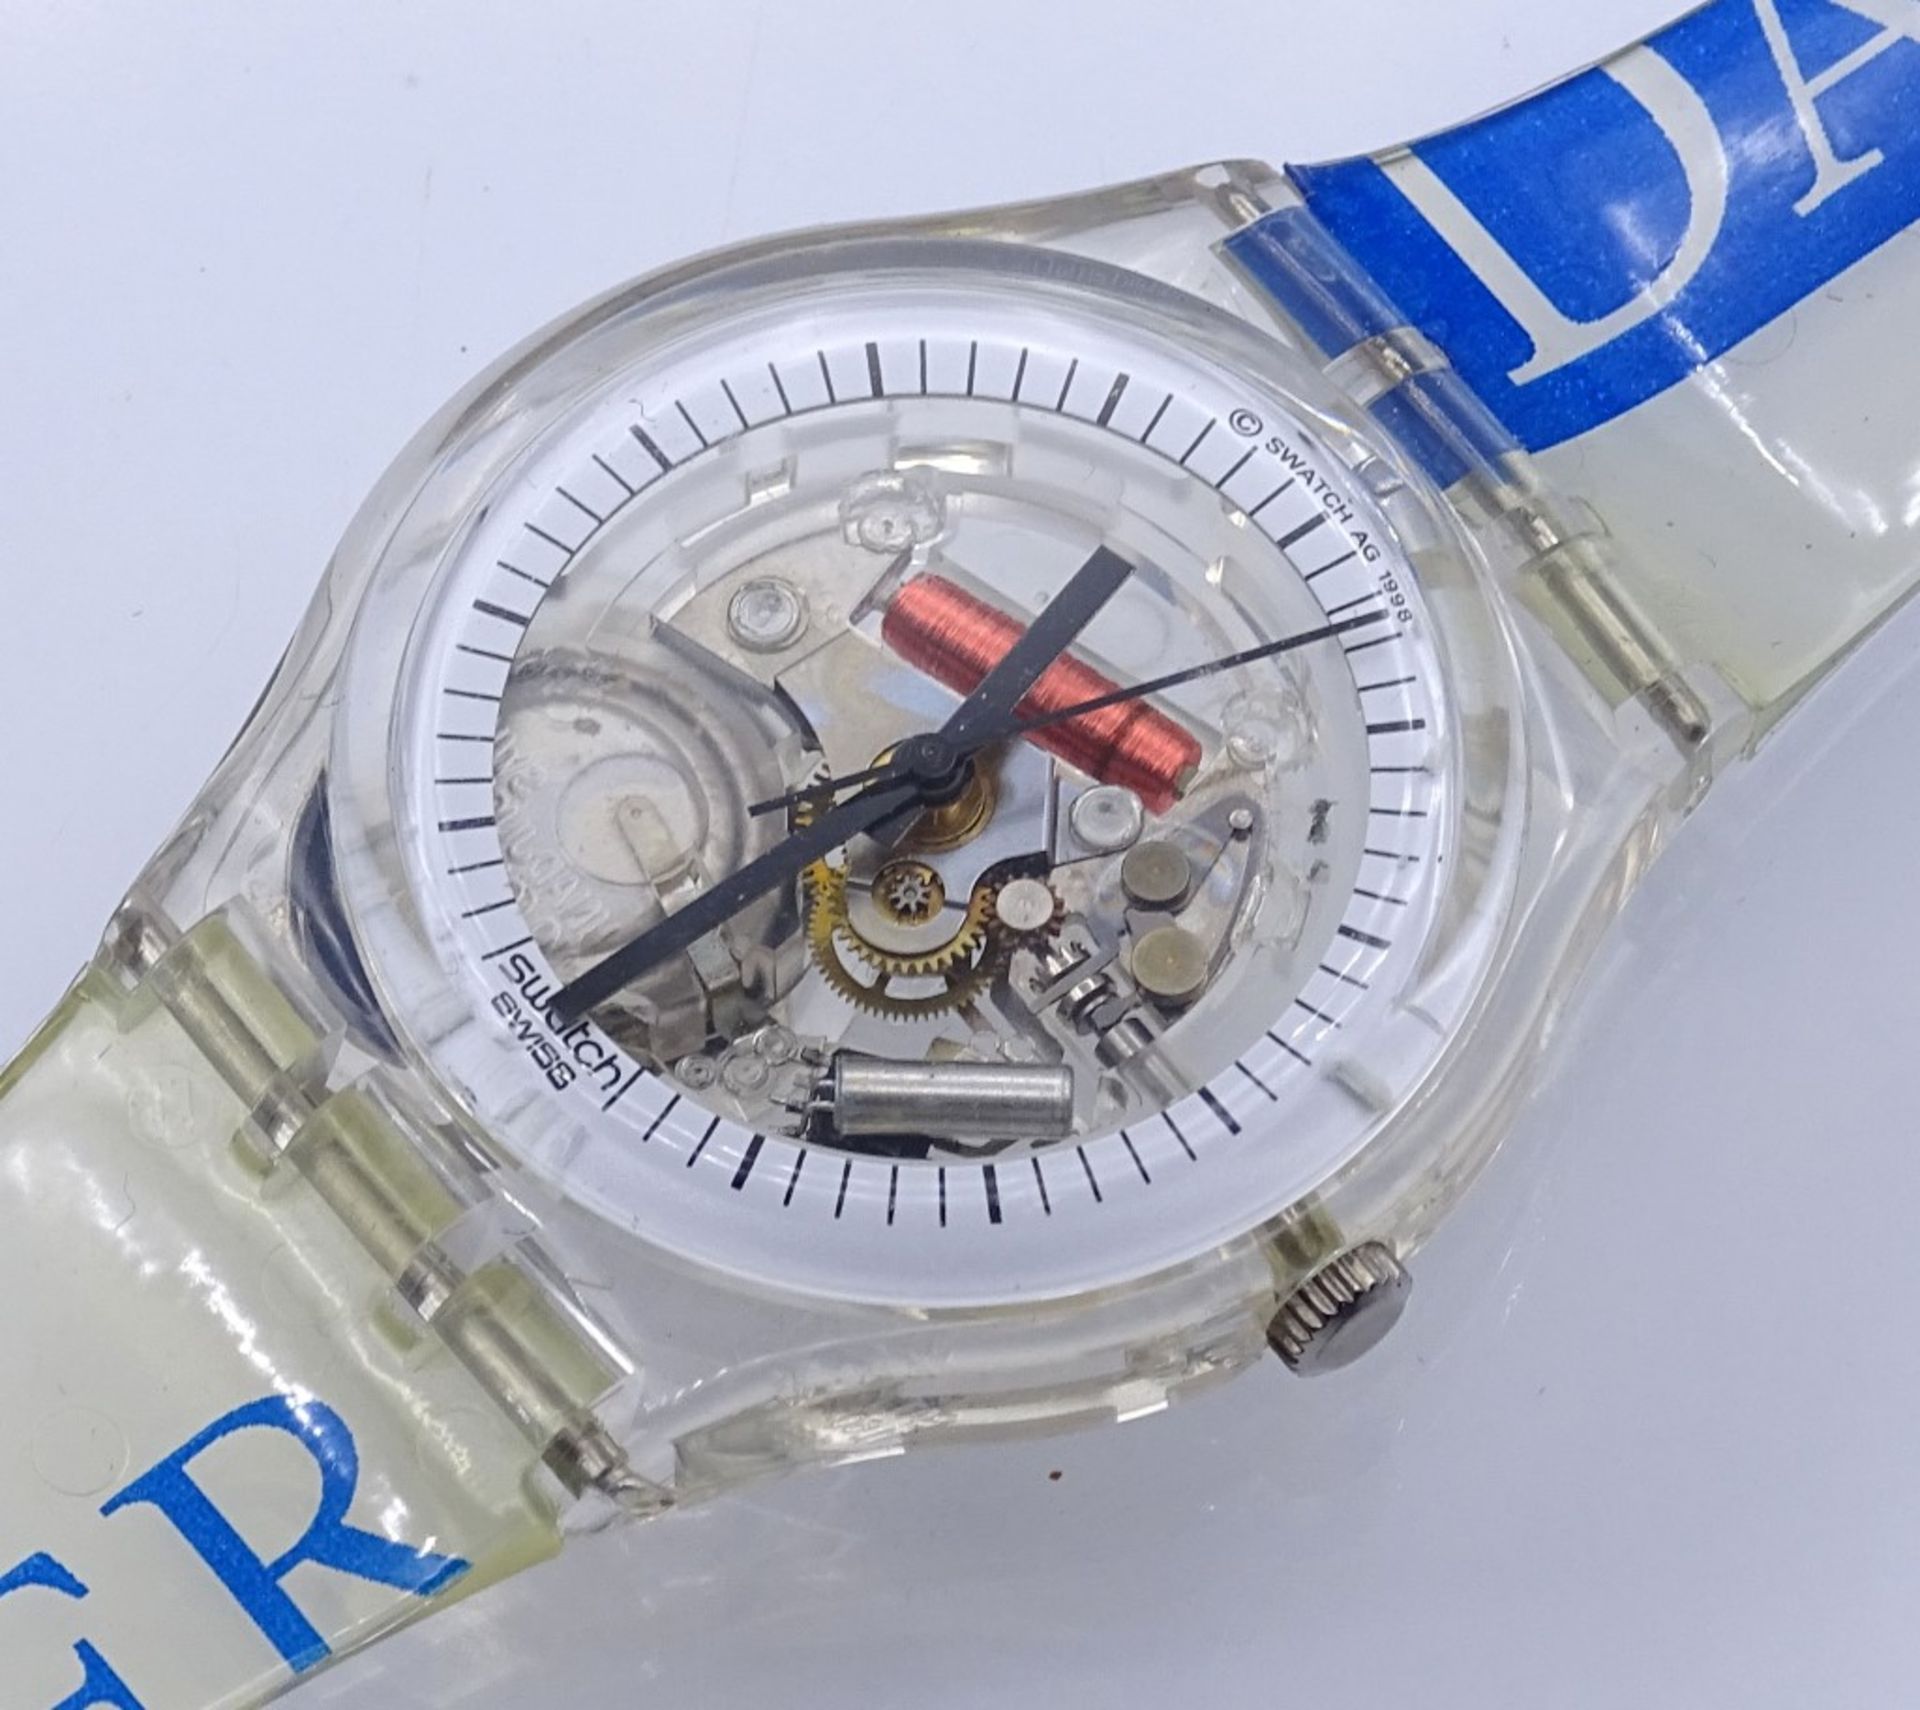 Armbanduhr "Swatch",1990, Quartz,OVP,Funktion nicht überprü- - -22.61 % buyer's premium on the